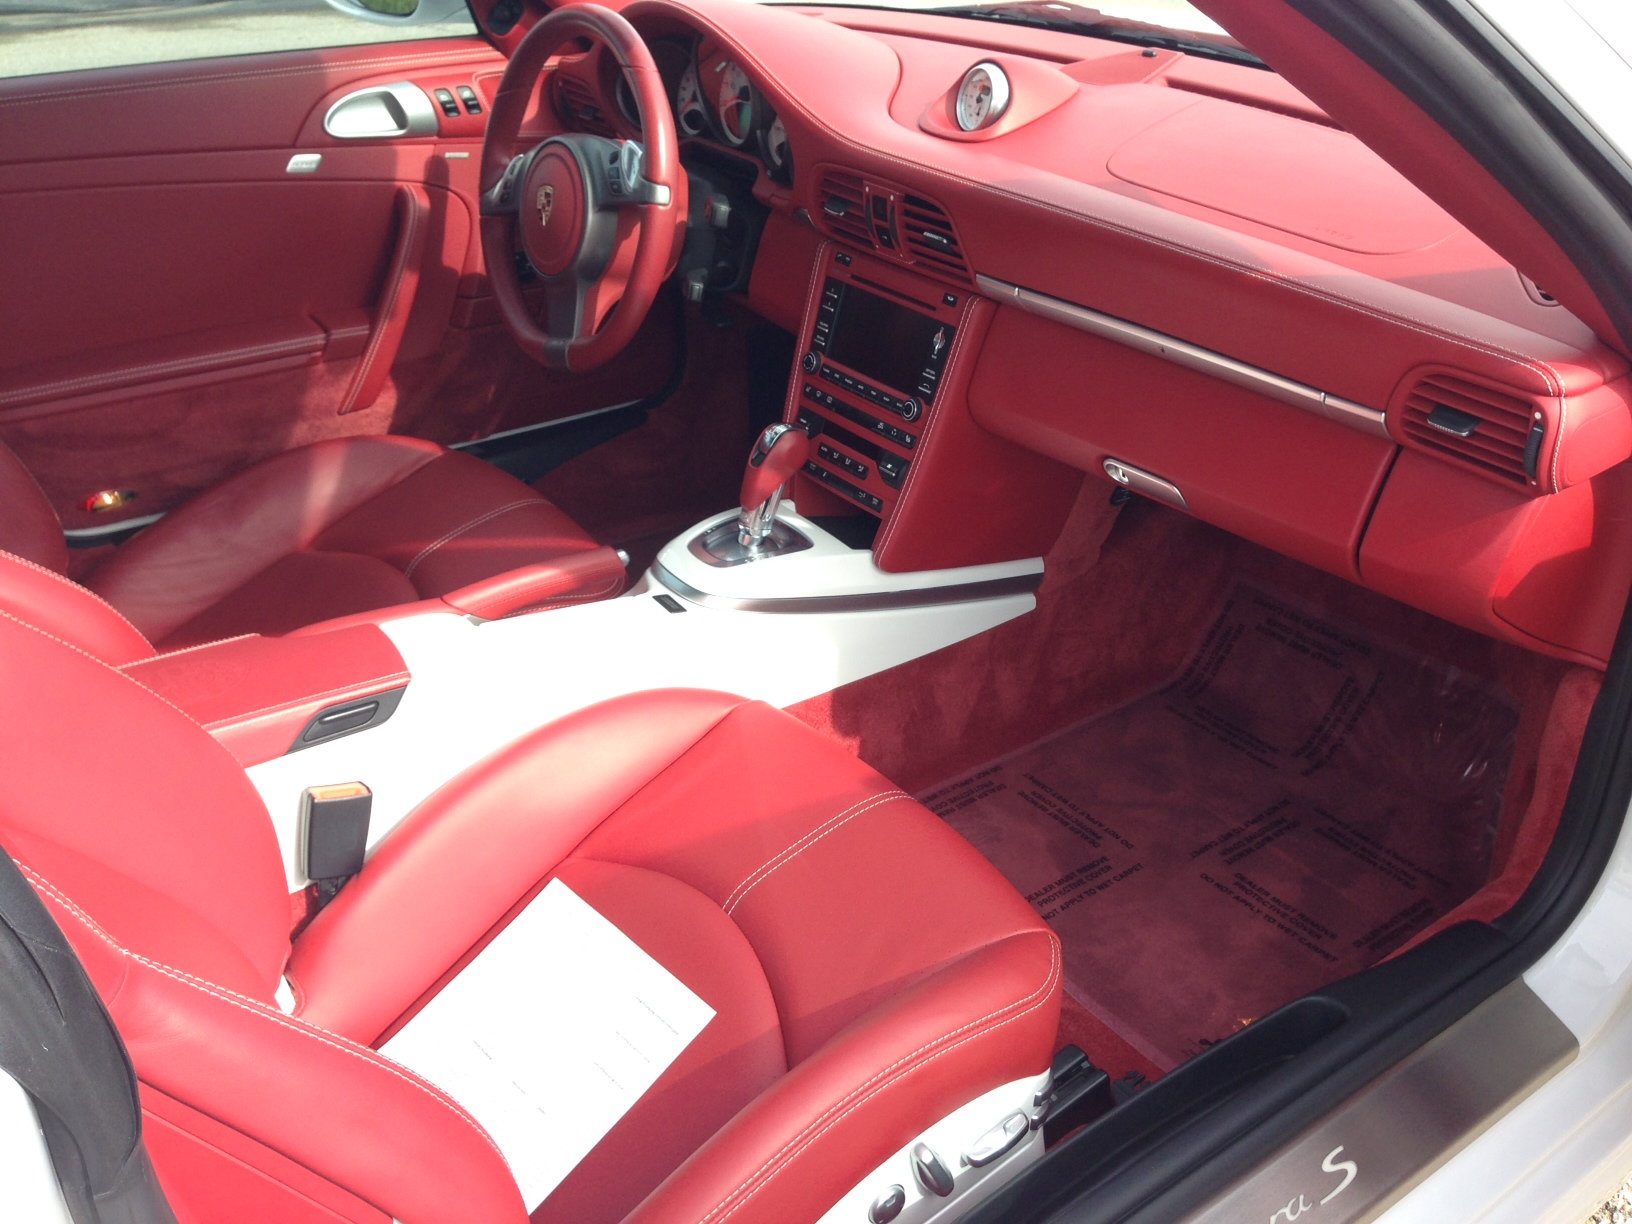 RED Interior? - 6SpeedOnline - Porsche Forum and Luxury Car Resource